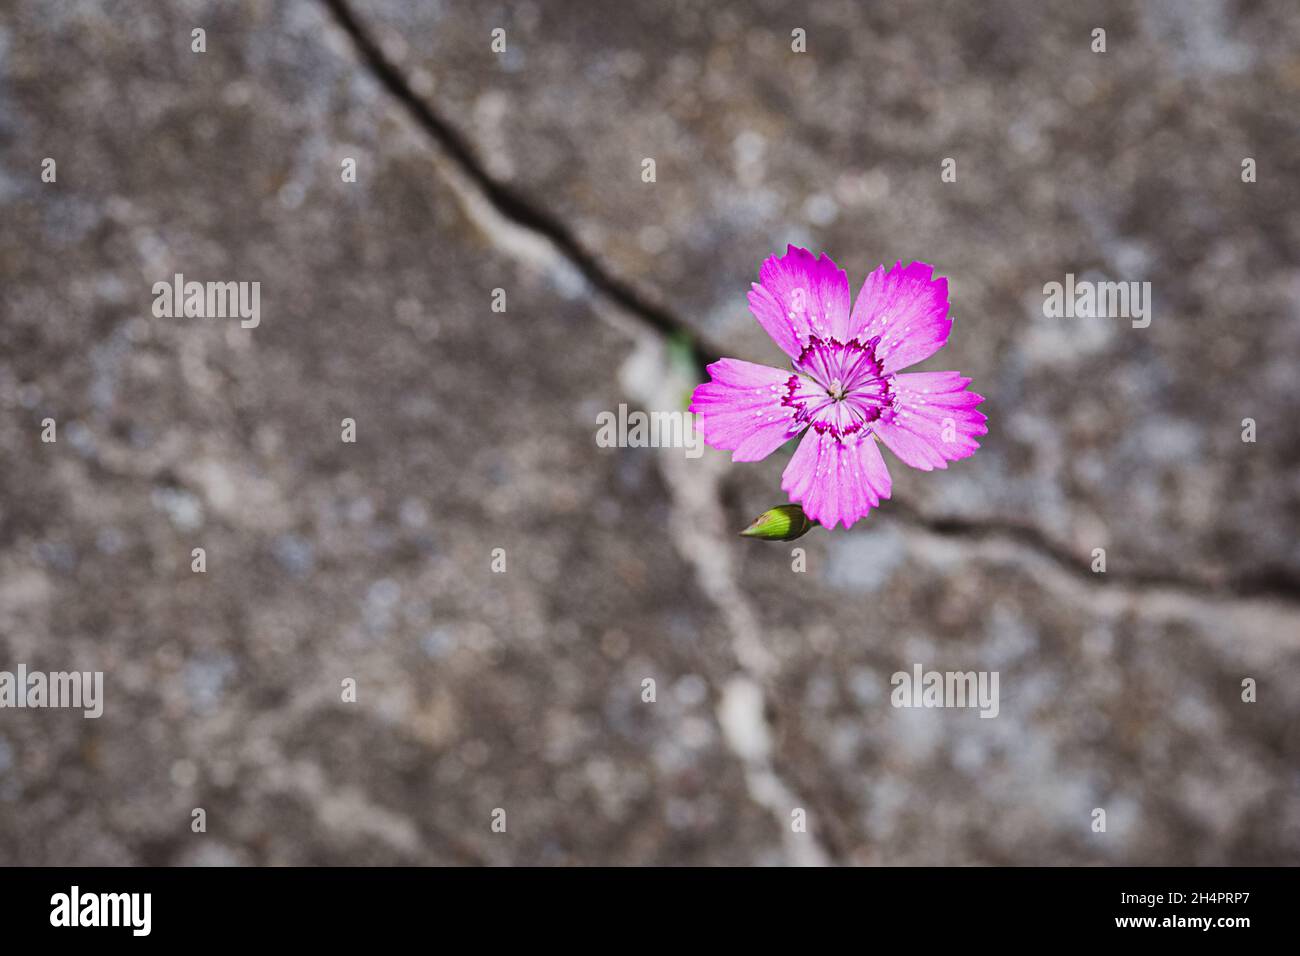 Blume wächst auf dem Felsen, Widerstandsfähigkeit und Wiedergeburt Symbol Stockfoto